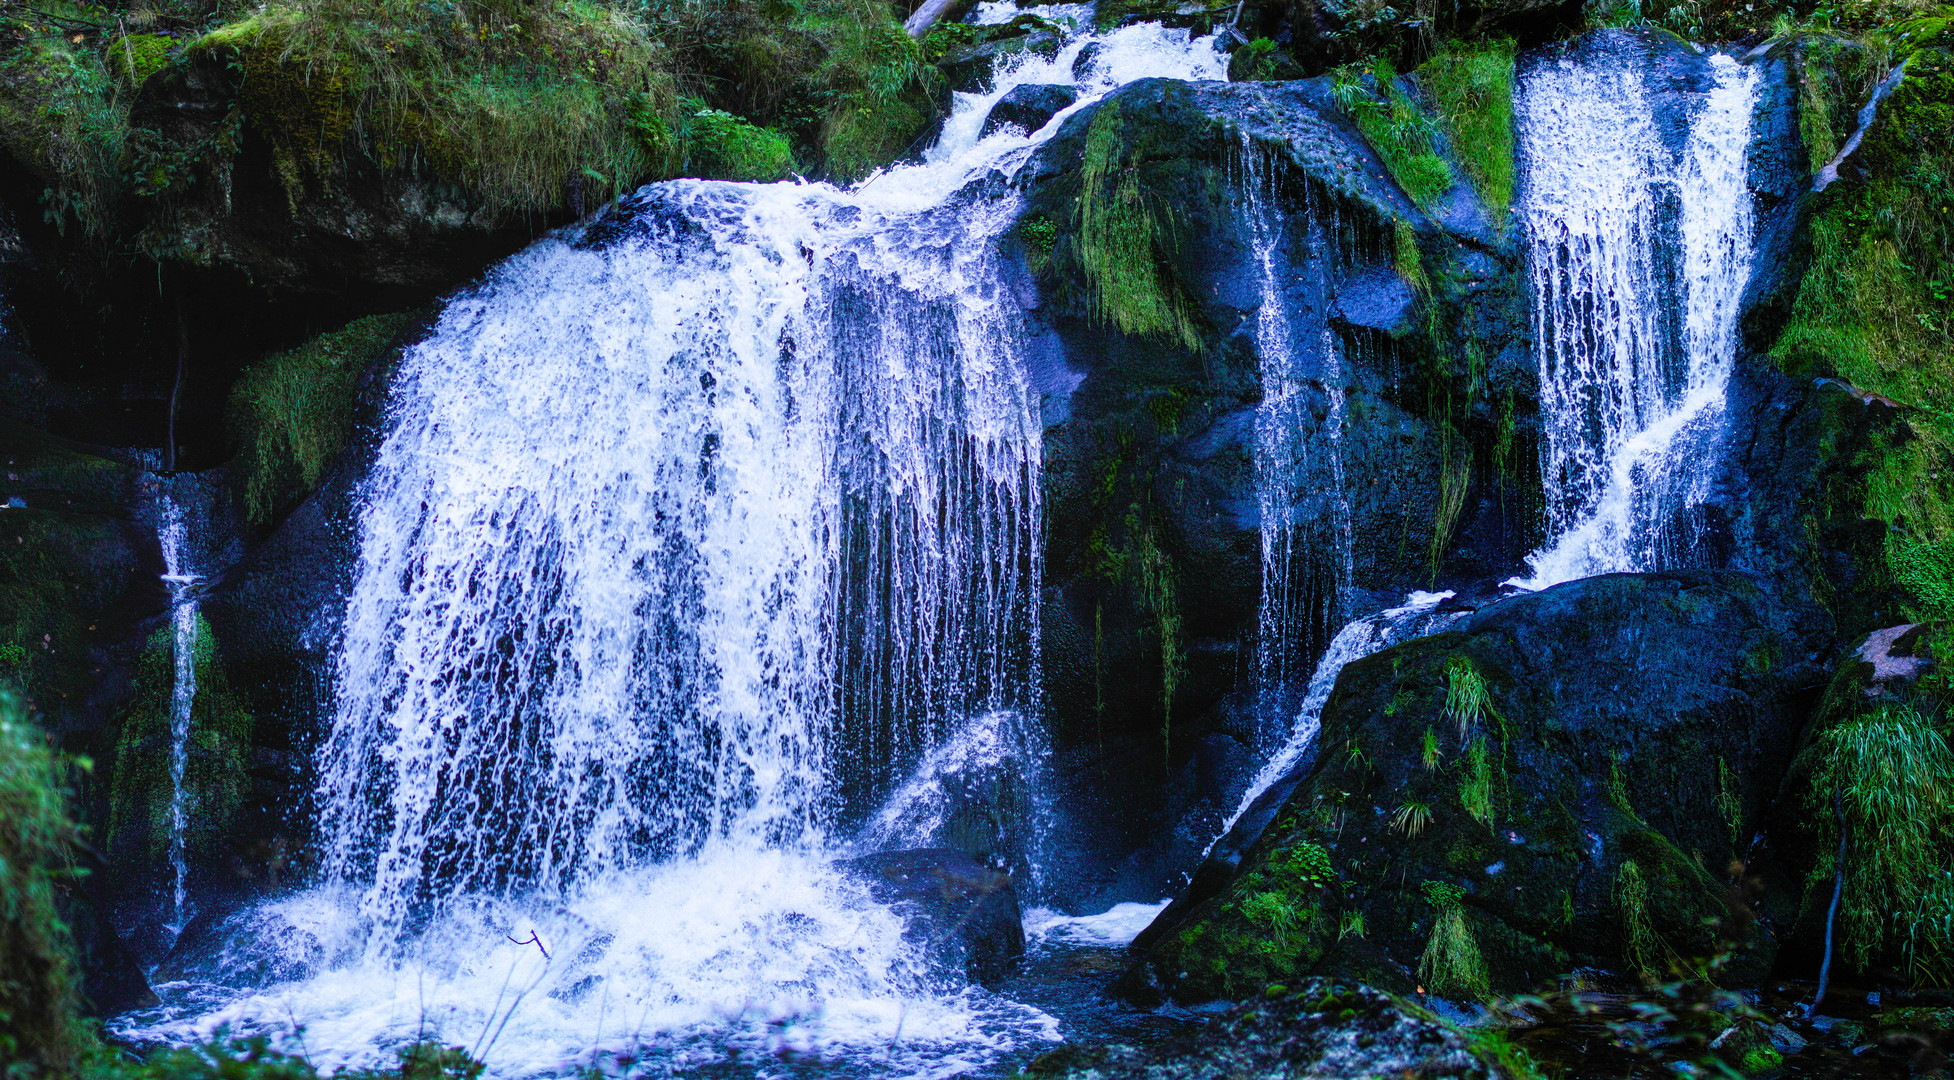 Triberger Wasserfälle 2